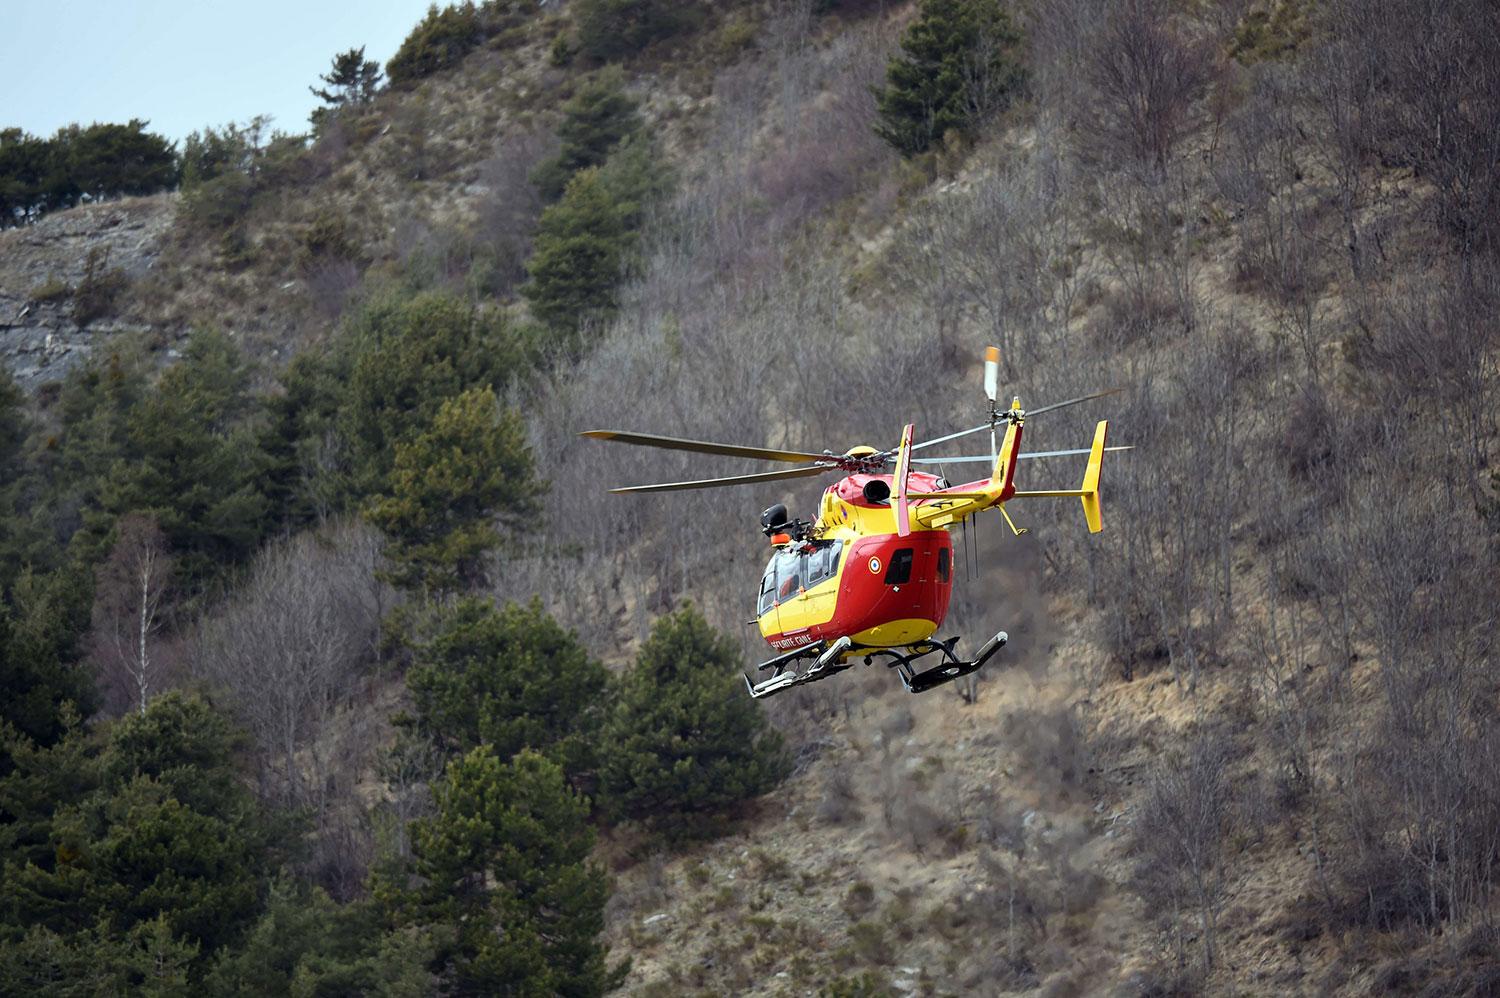 En fransk helikopter flyger nära Seyne i sydöstra Frankrike, nära olycksplatsen.